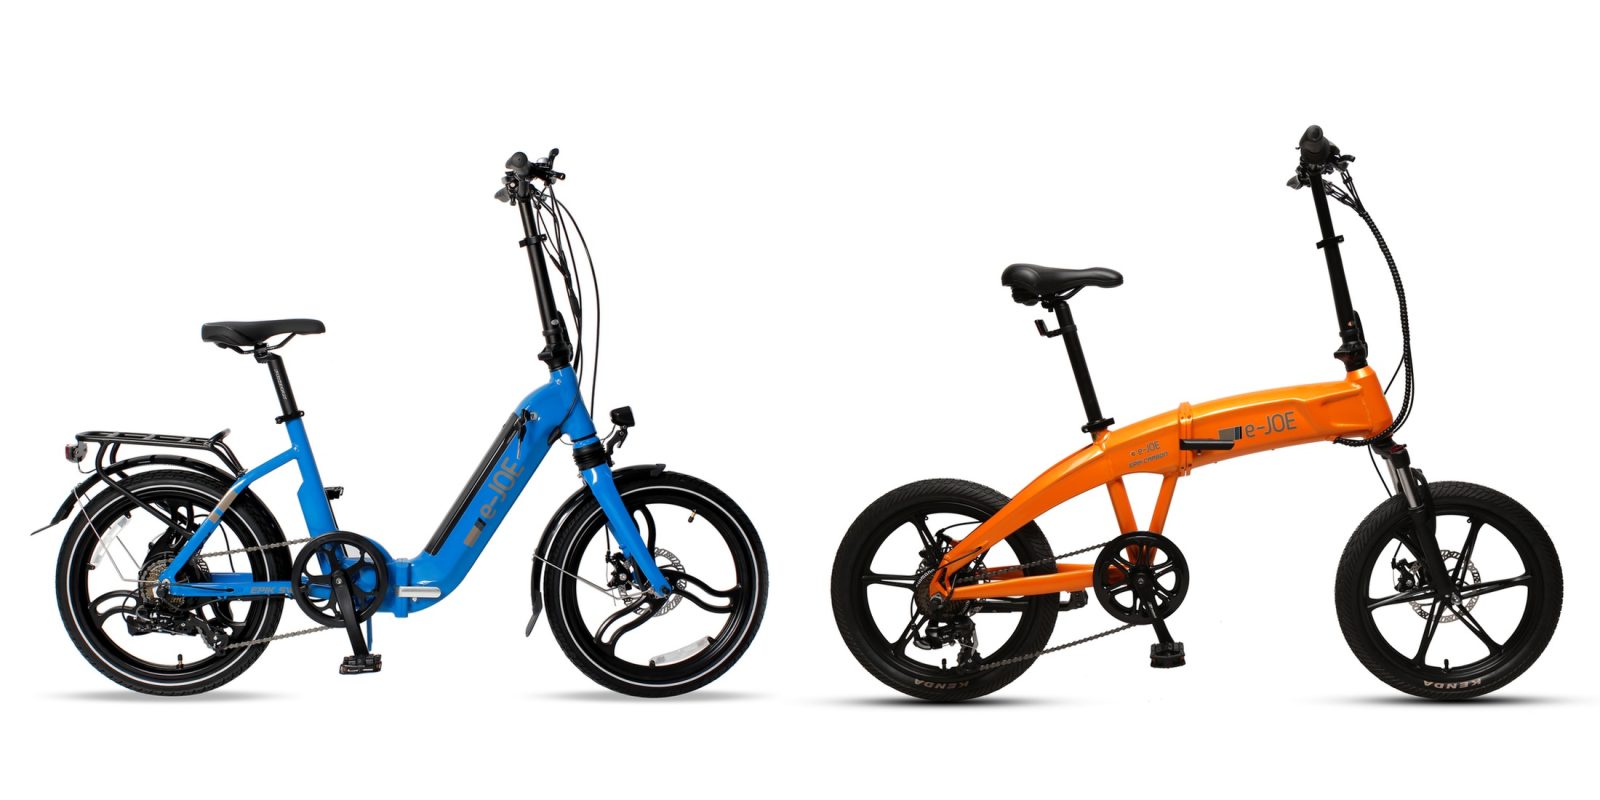 Cặp xe đạp điện tử EPIK Swan và EPIK Carbon